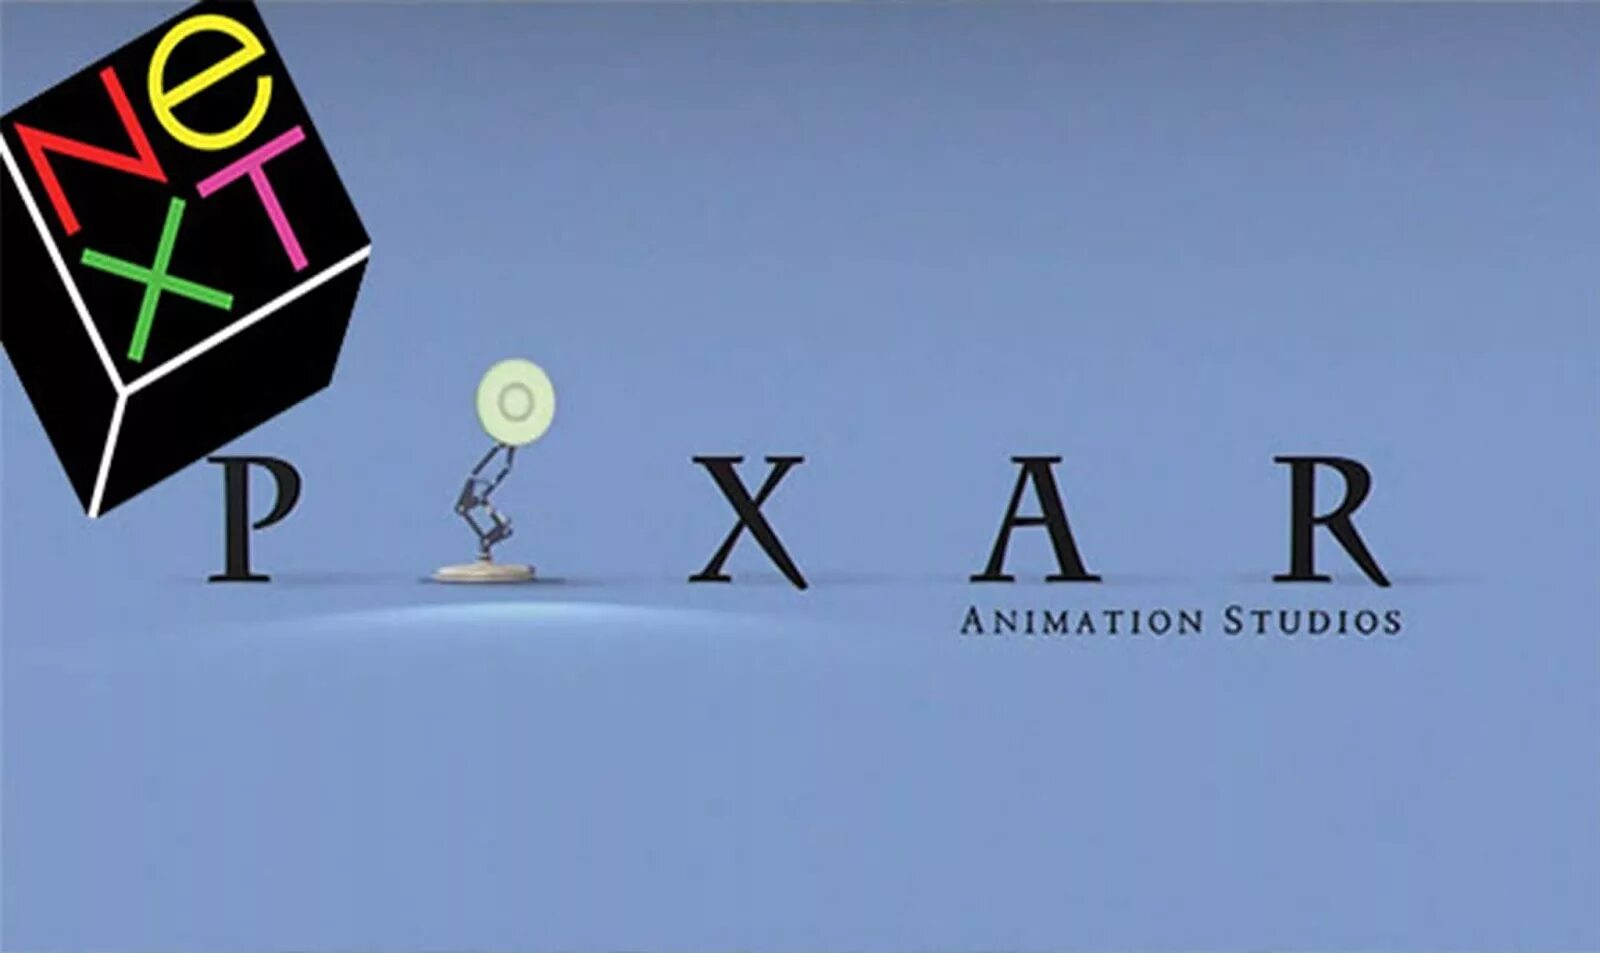 Стив Джобс и компания «Pixar». Компания Pixar Стива Джобса. Логотип next Стив Джобс. Студия Пиксар Стив Джобс. Пиксар премиум